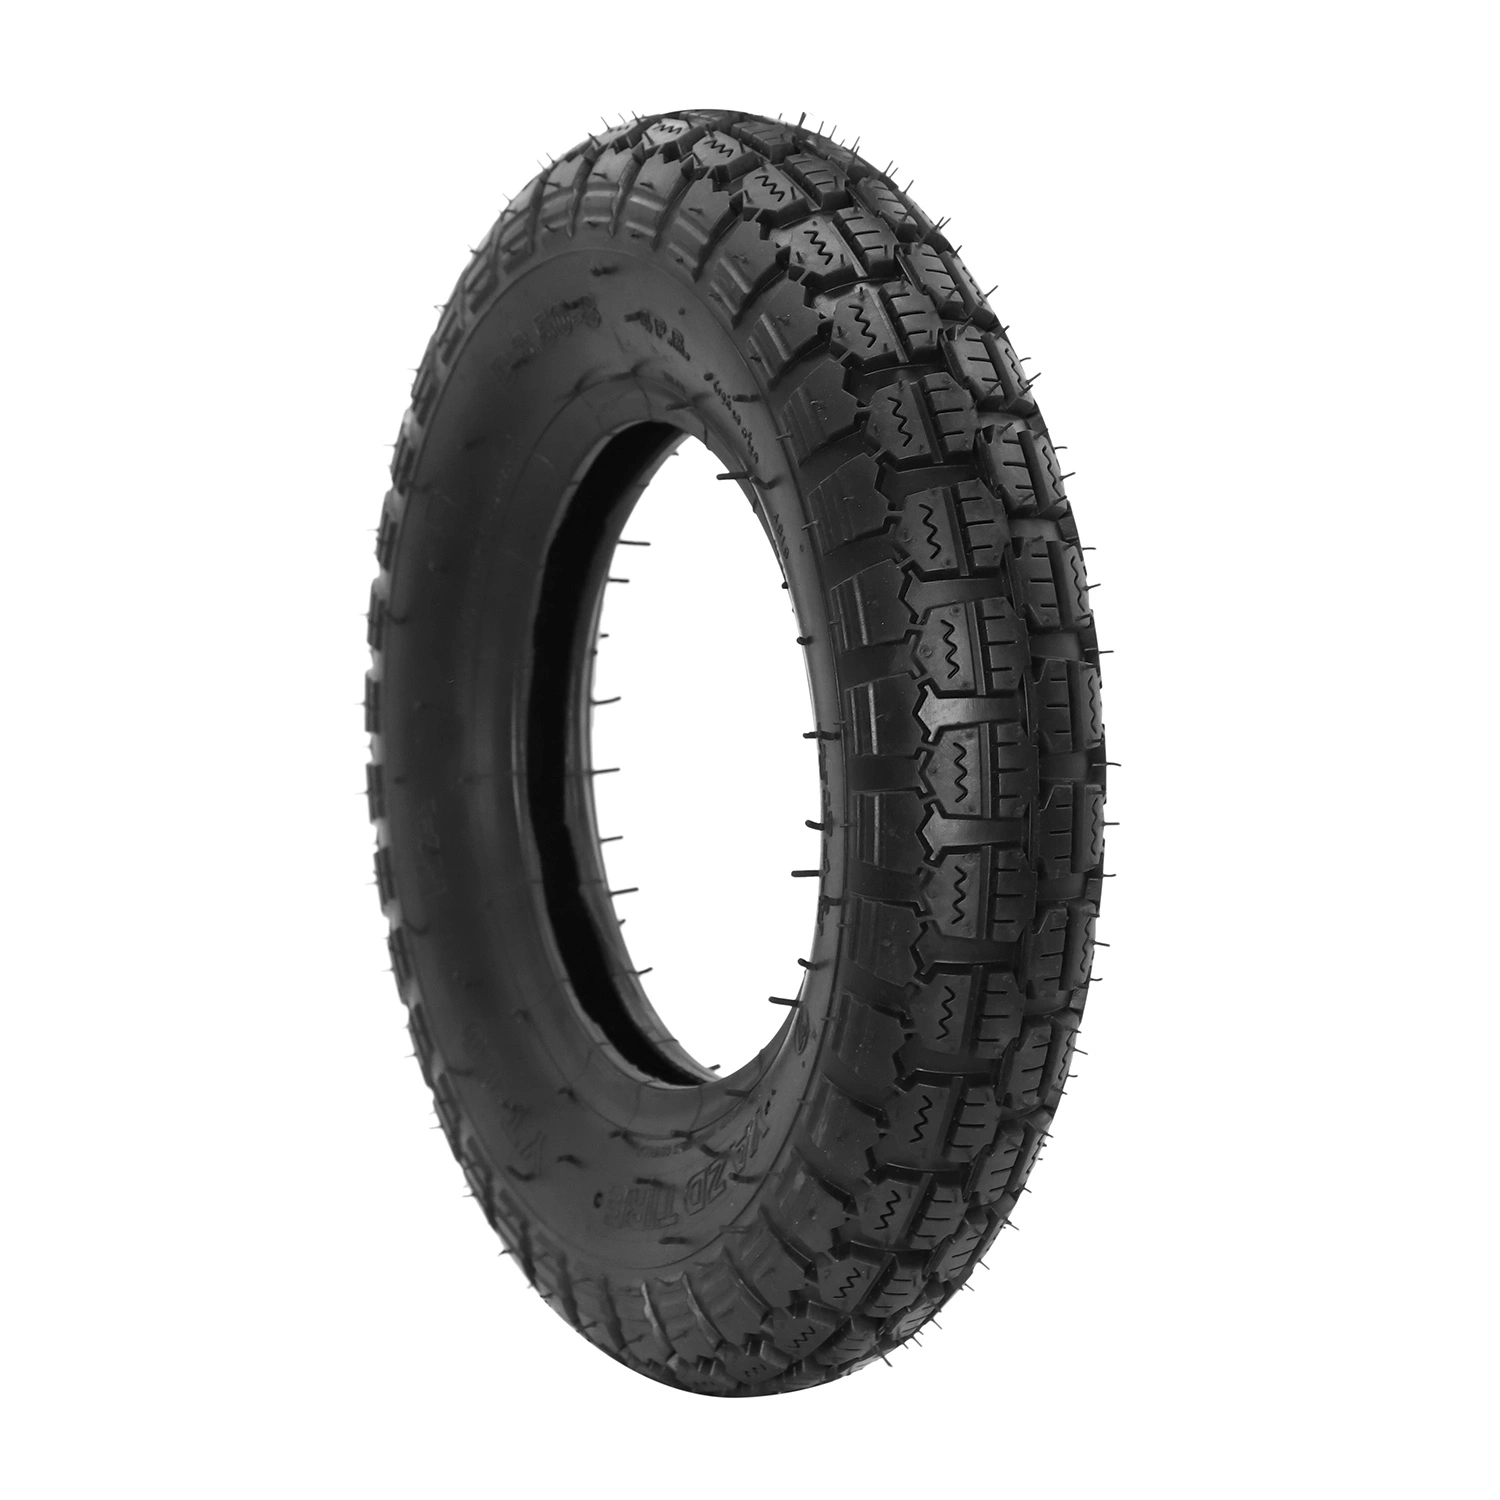 10inch Rubber Flat Free Tire PU Foam Hand Trolley Wheel